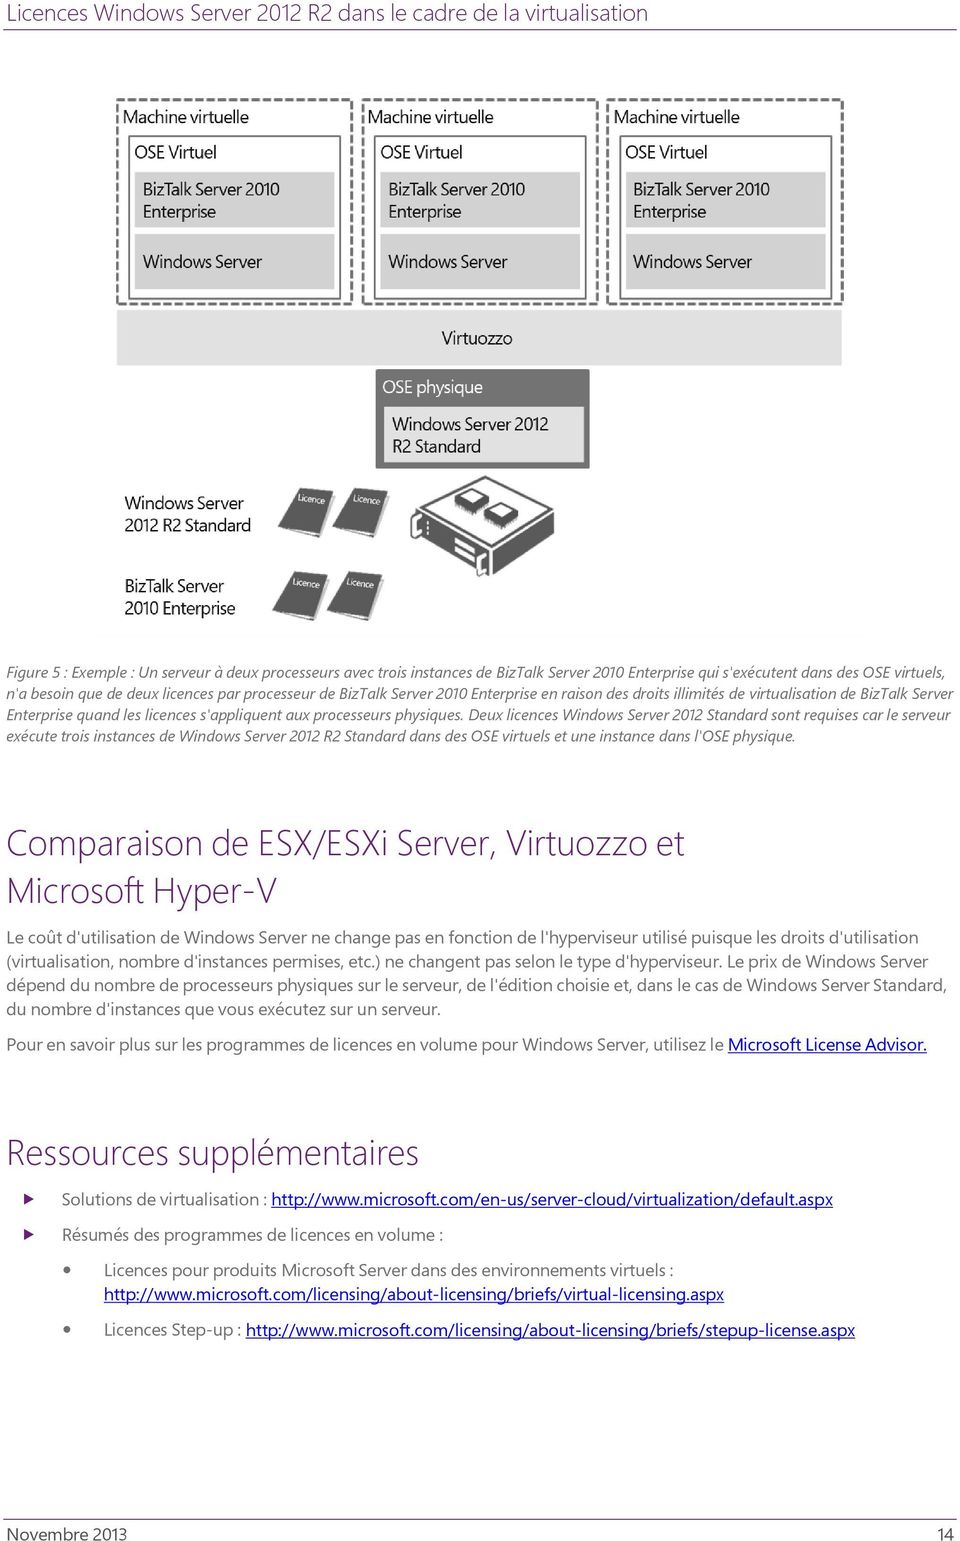 Deux licences Windows Server 2012 Standard sont requises car le serveur exécute trois instances de Windows Server 2012 R2 Standard dans des OSE virtuels et une instance dans l'ose physique.